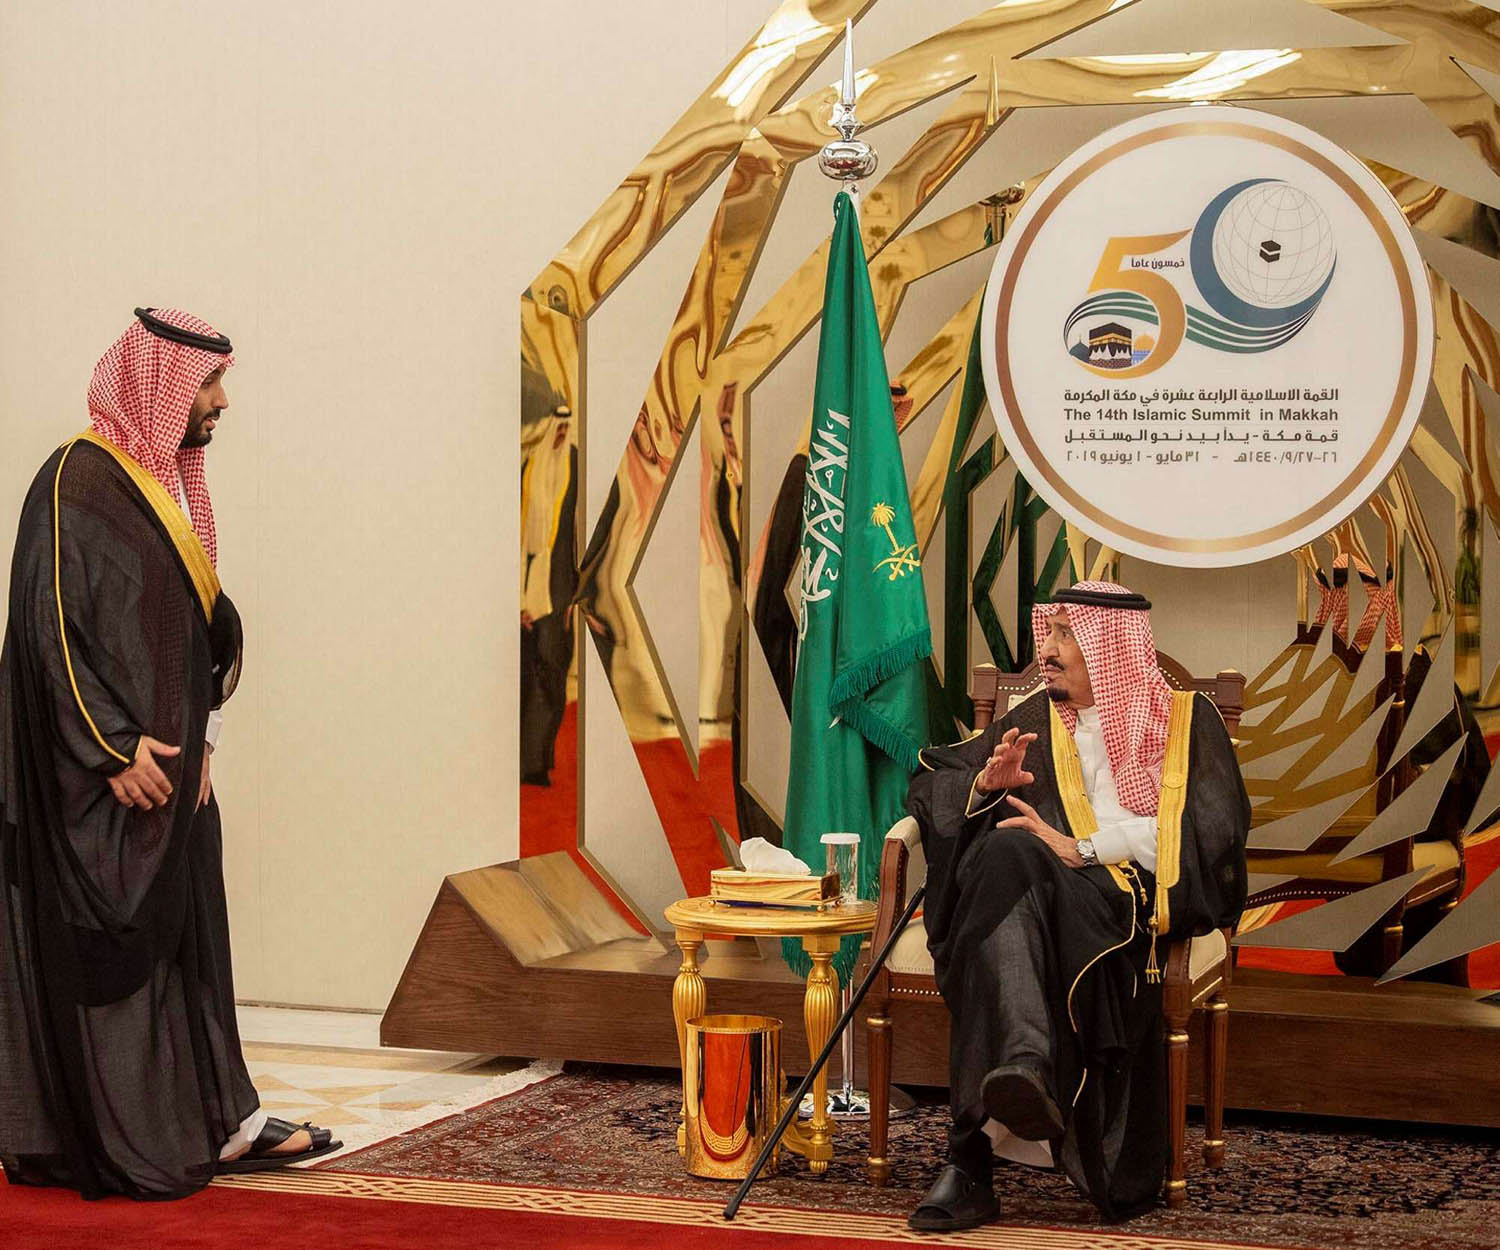 العاهل السعودي الملك سلمان بن عبدالعزيز يتحدث إلى ولي العهد الأمير محمد بن سلمان في قمة مكة